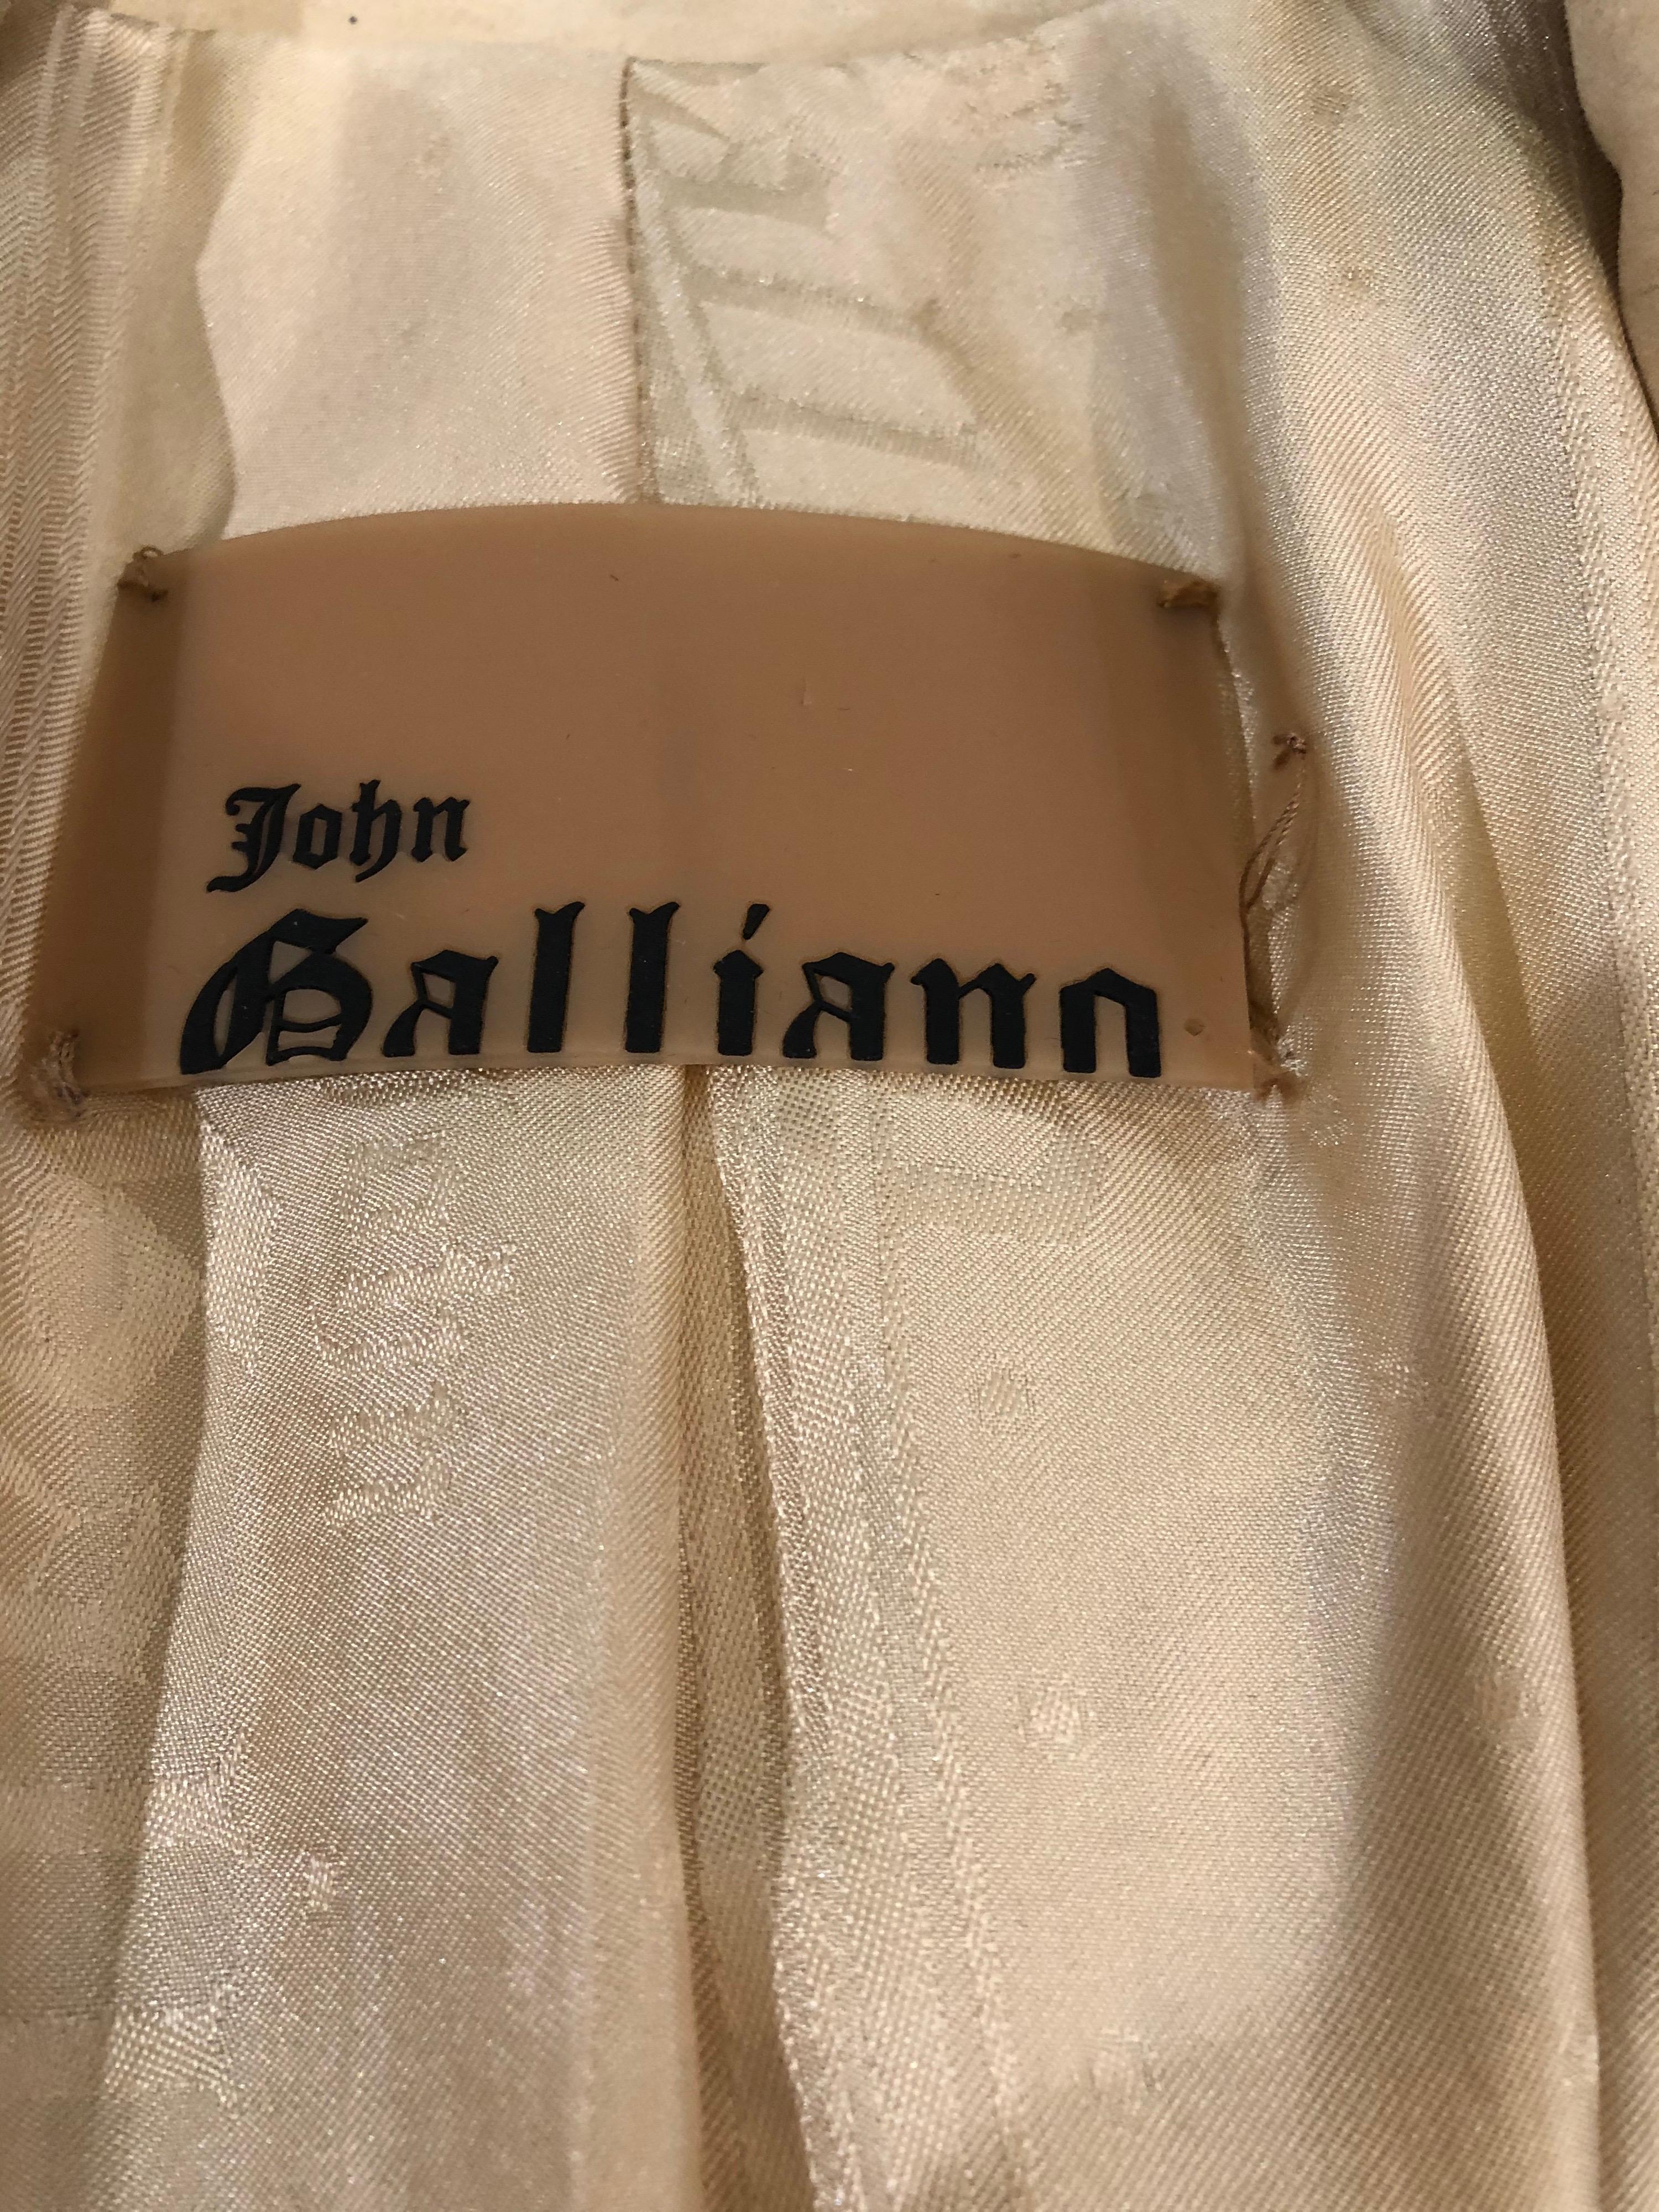 Chic veste blazer JOHN GALLIANO en daim / cuir beige kaki brodé de perles du début des années 2000 ! Des centaines de perles en laiton et de broderies cousues à la main. Fermeture par un seul bouton avec des poches de chaque côté de la taille.